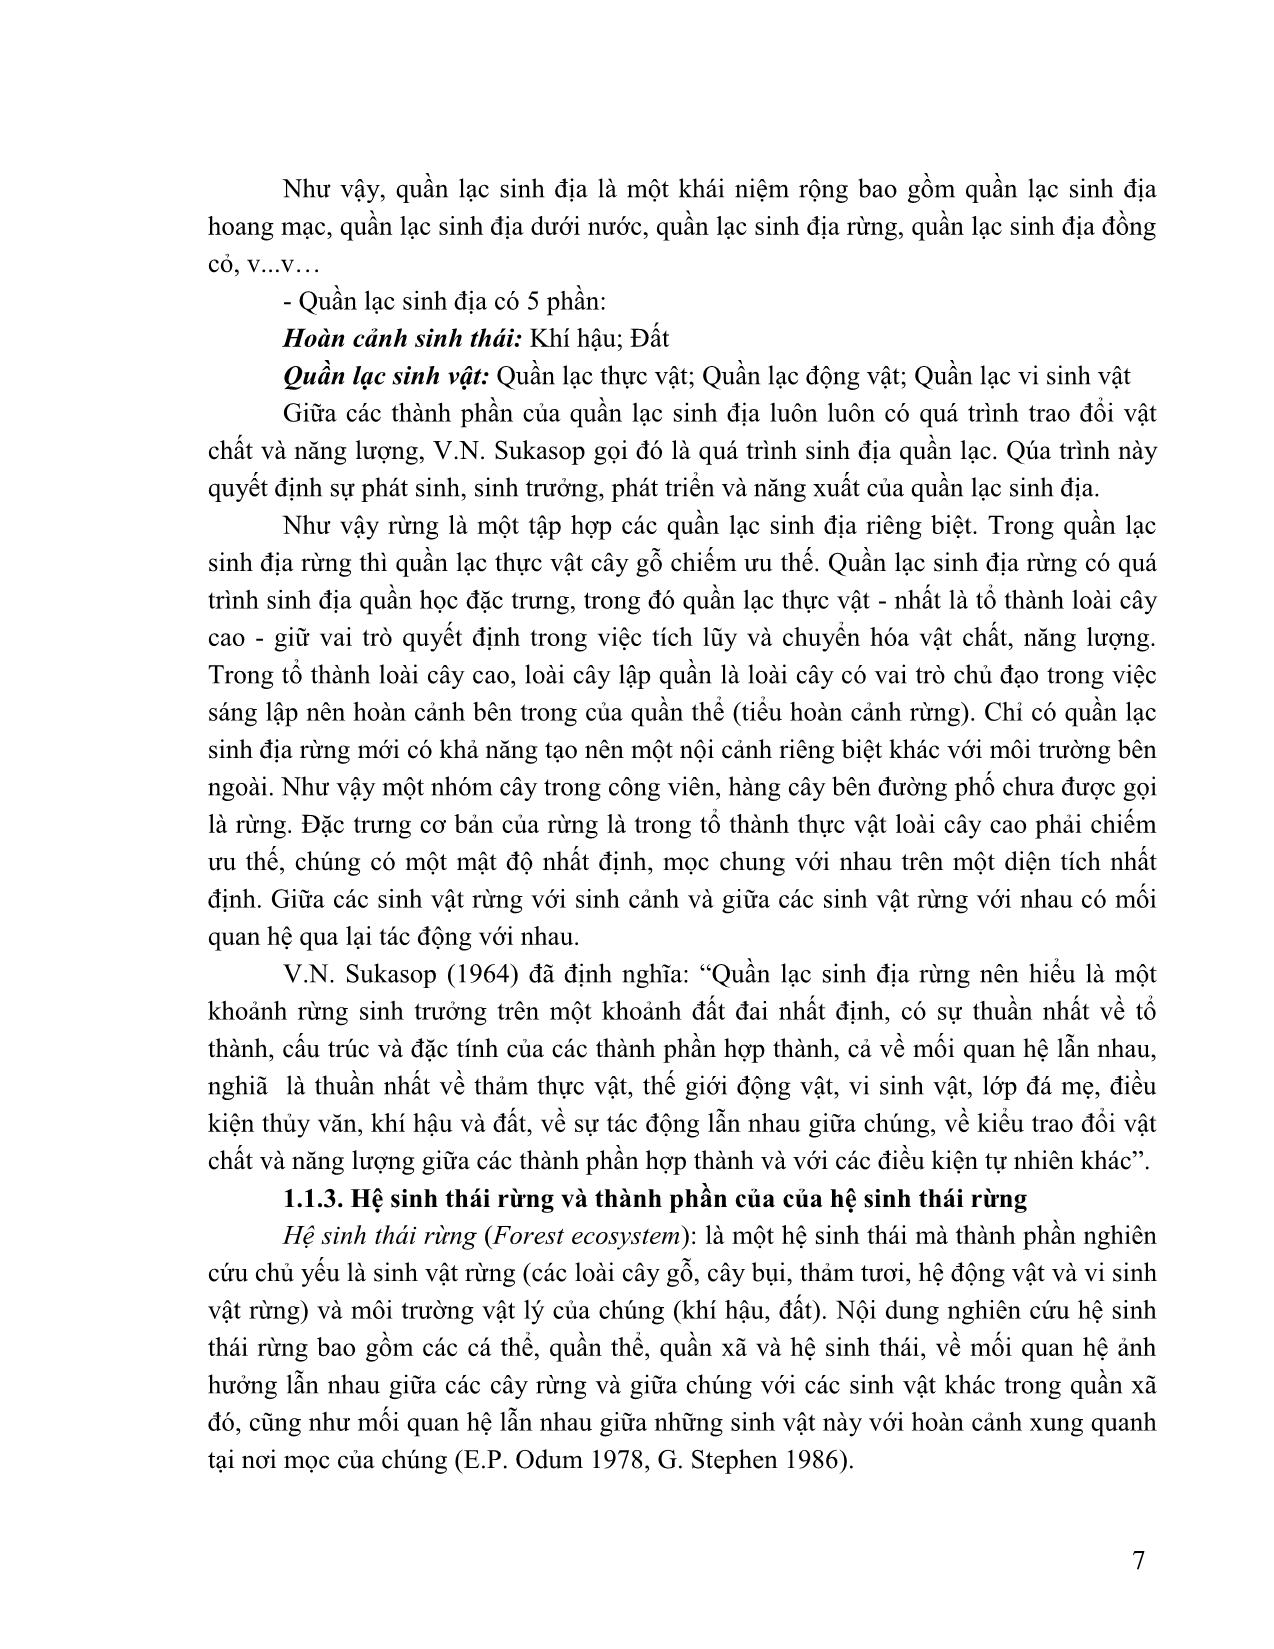 Giáo trình Lâm sinh tổng hợp trang 8